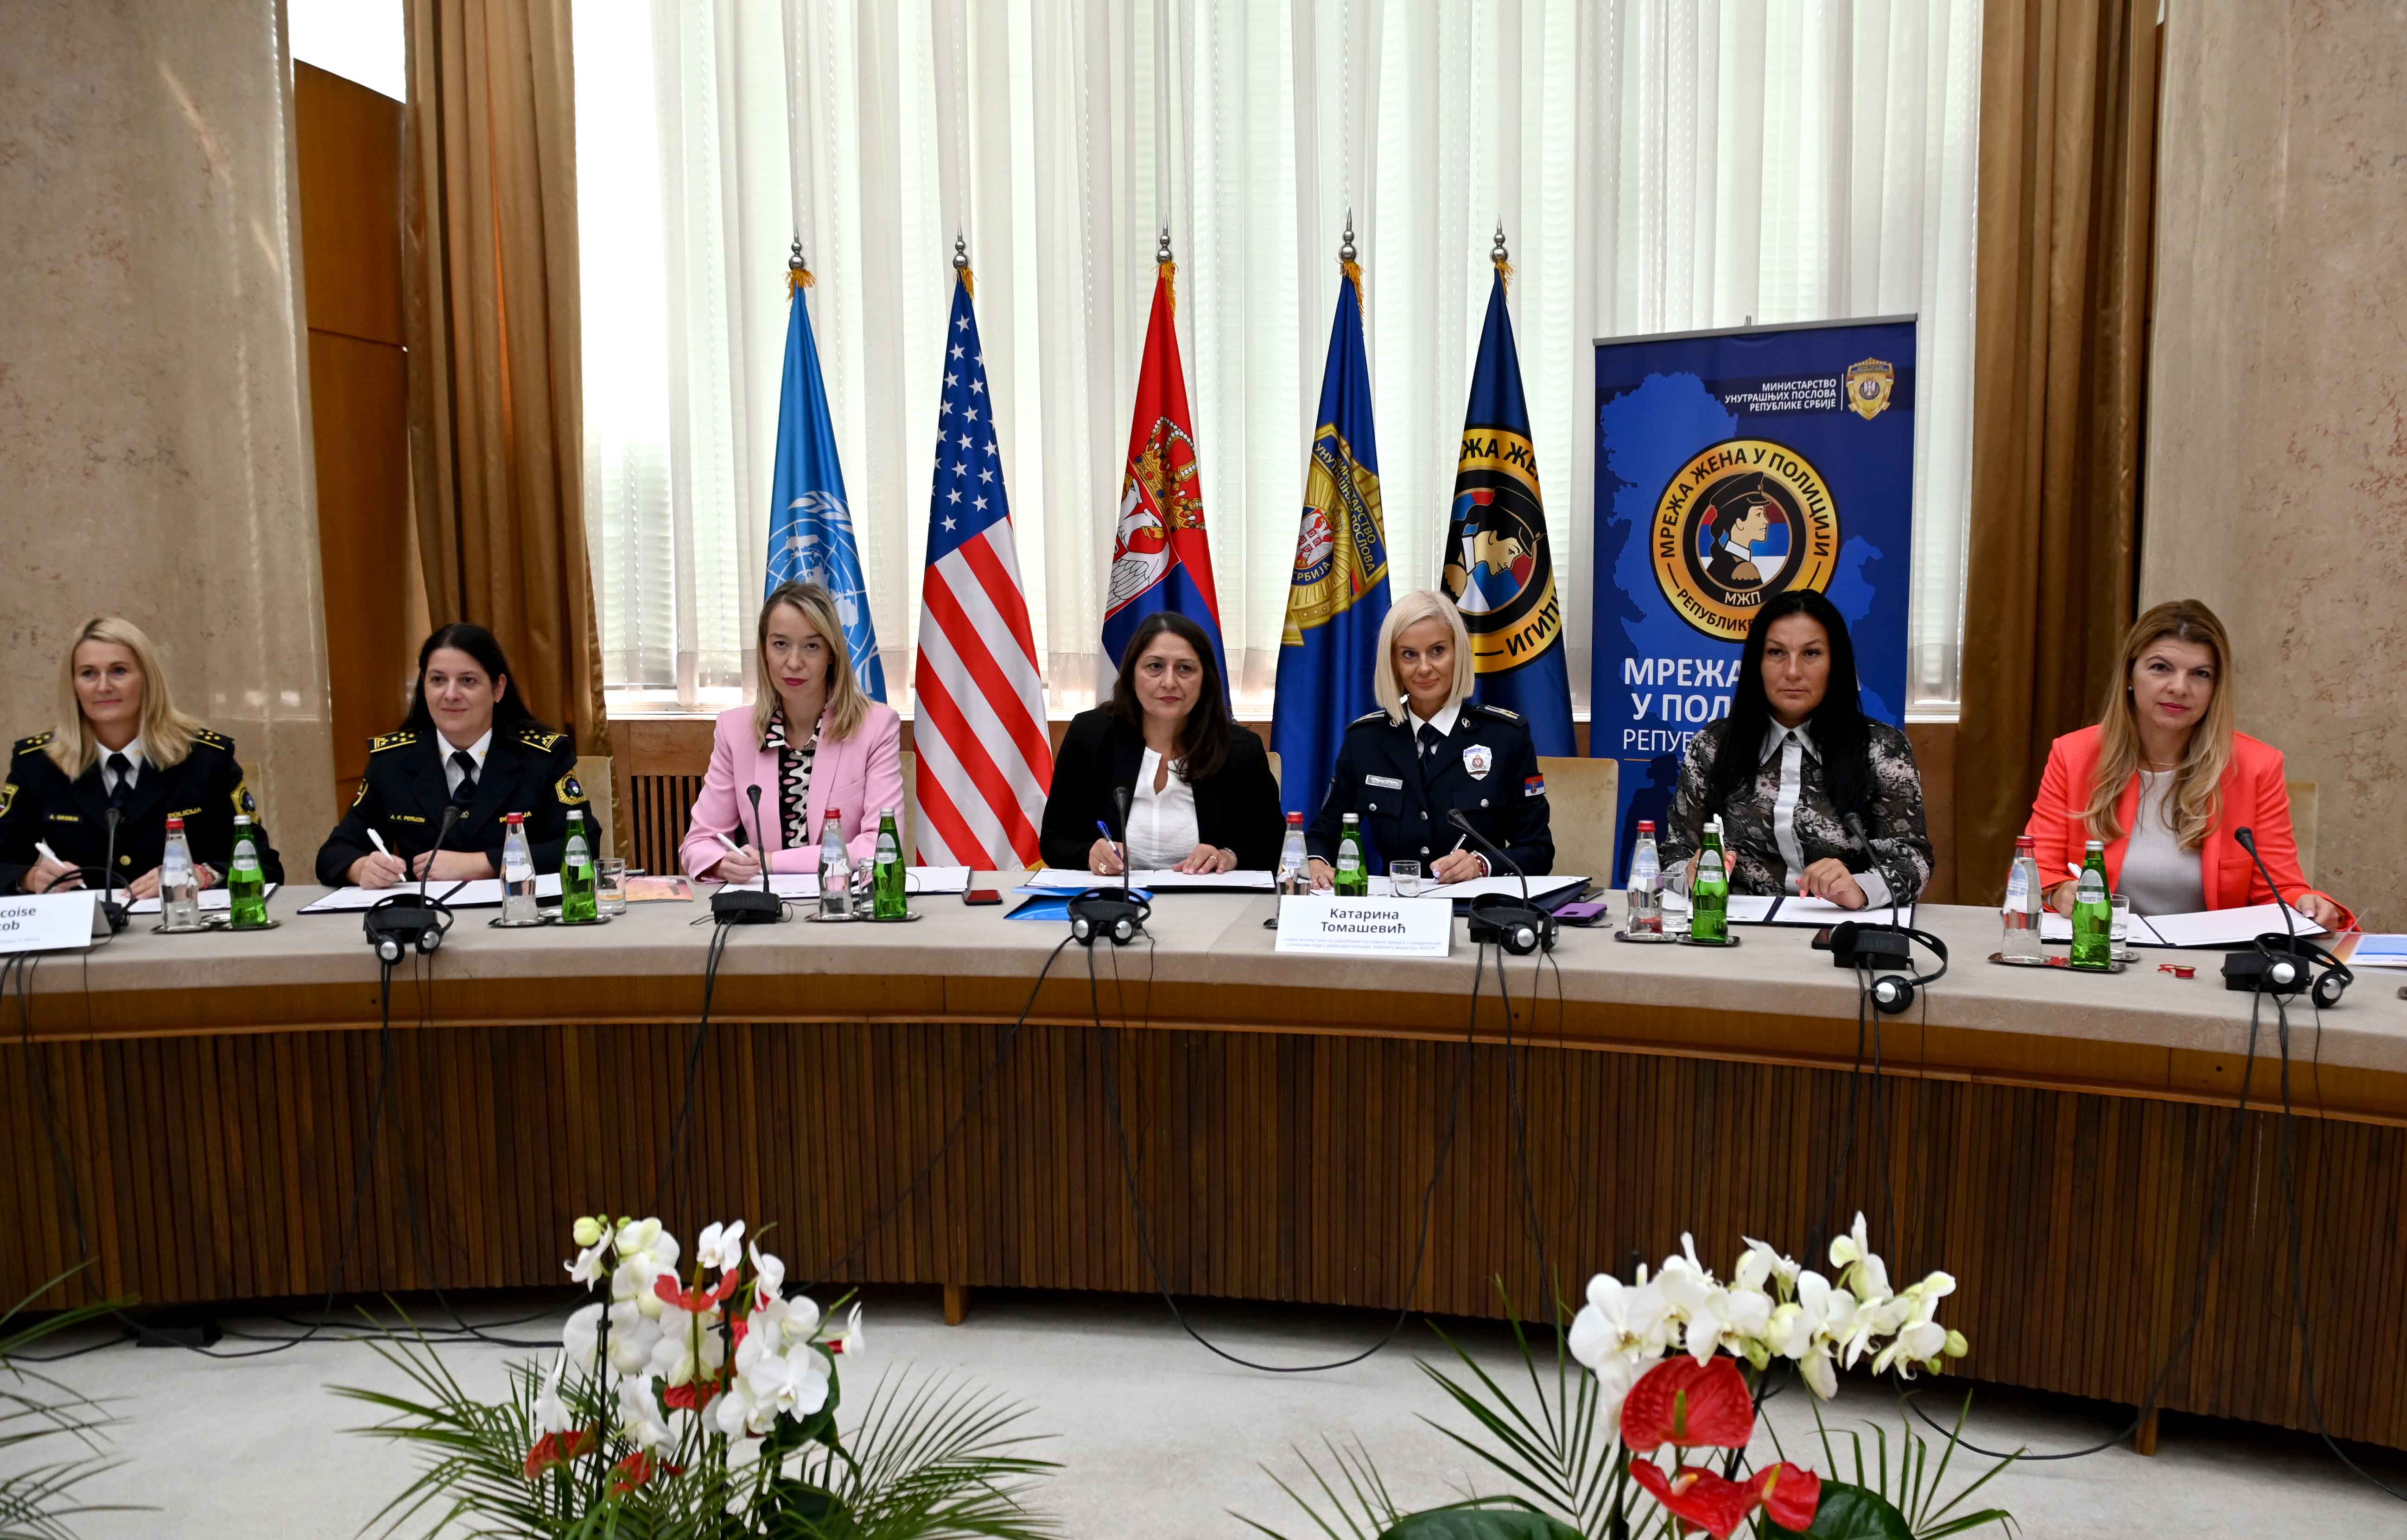 Ministar unutrašnjih poslova Bratislav Gašić otvorio u Beogradu Regionalnu konferenciju Mreža žena u policiji